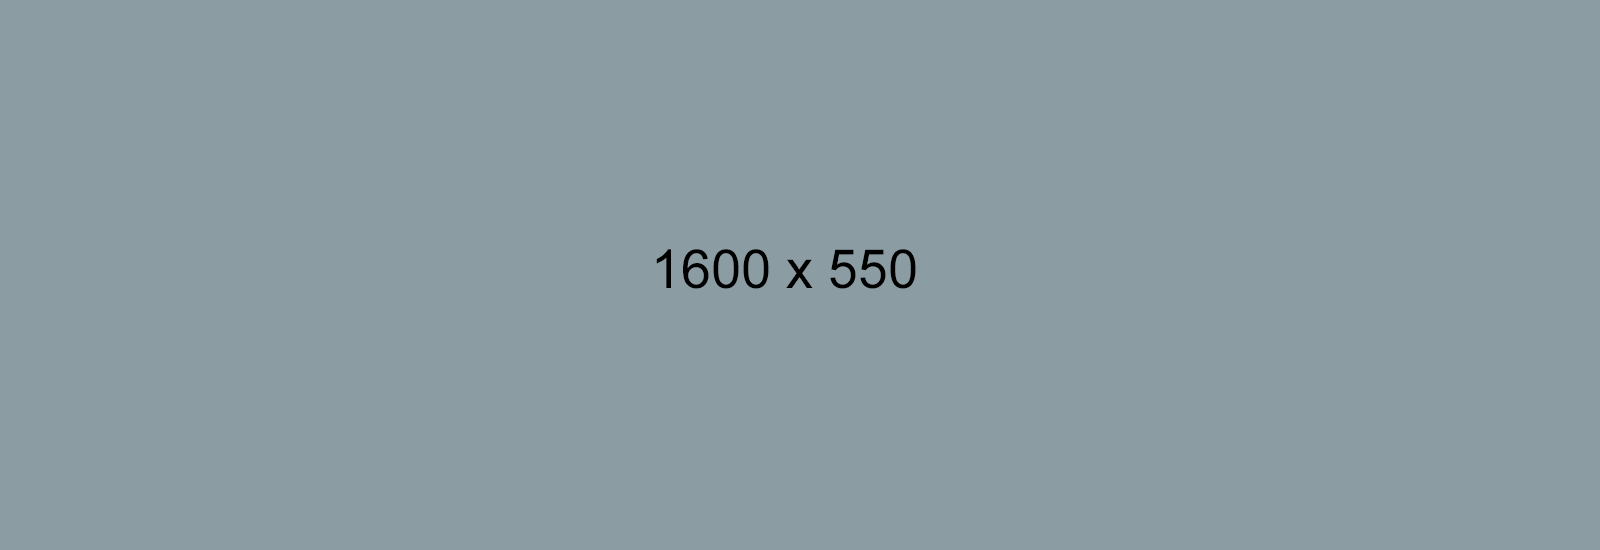 1600x550